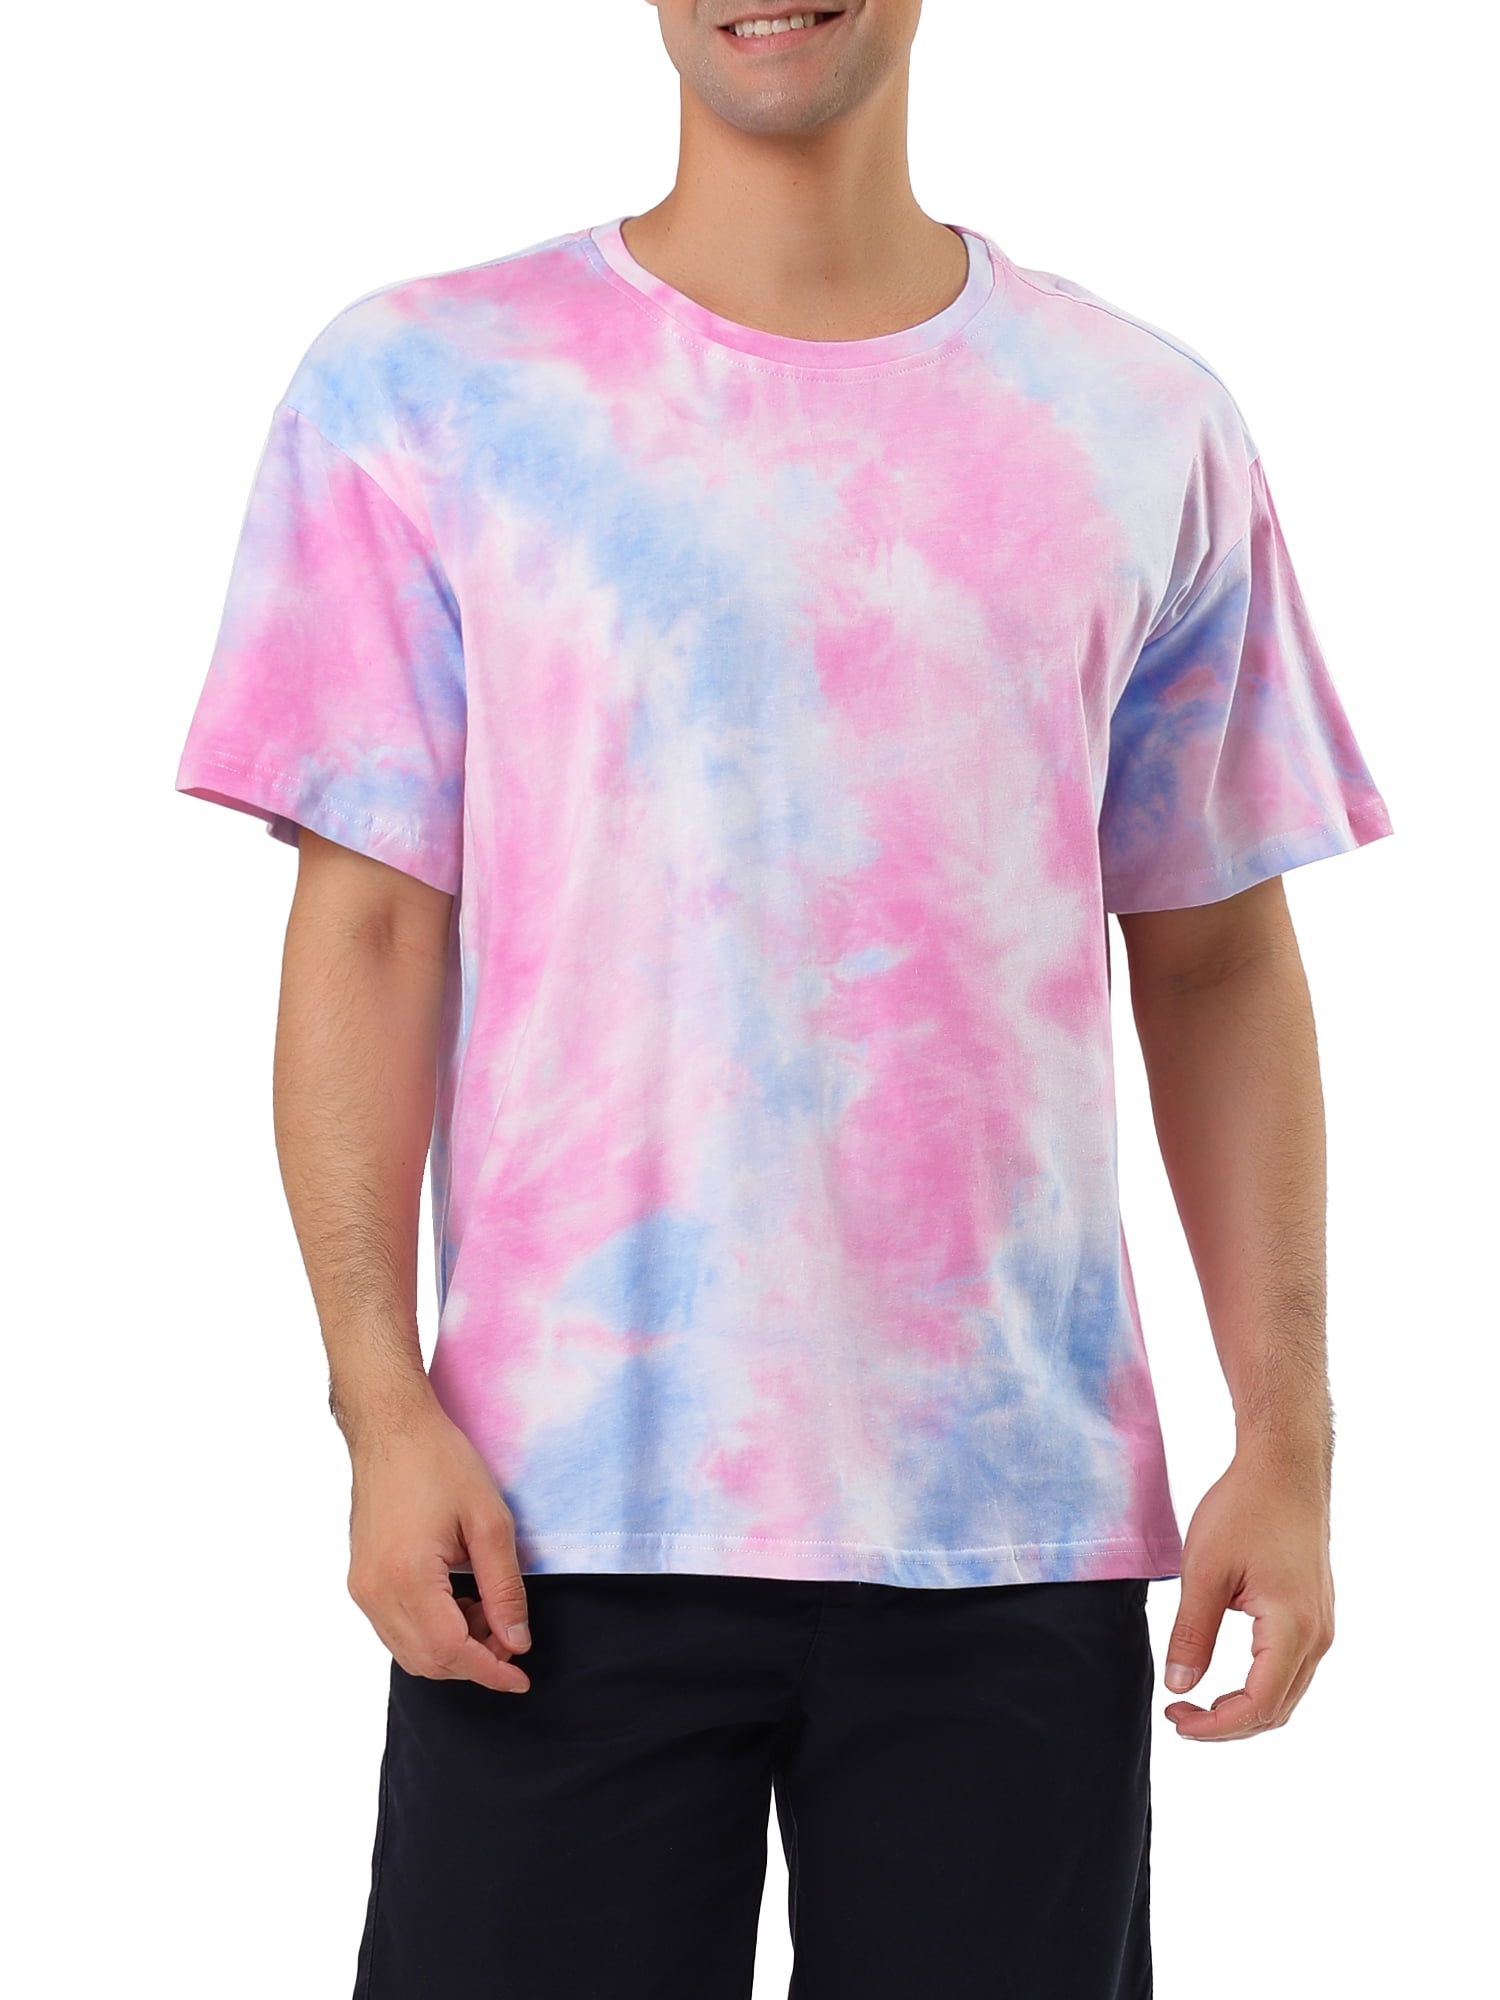 Lars Amadeus Men's Summer Tie Dye Tee Short Sleeves Hip Hop Printed T-Shirt